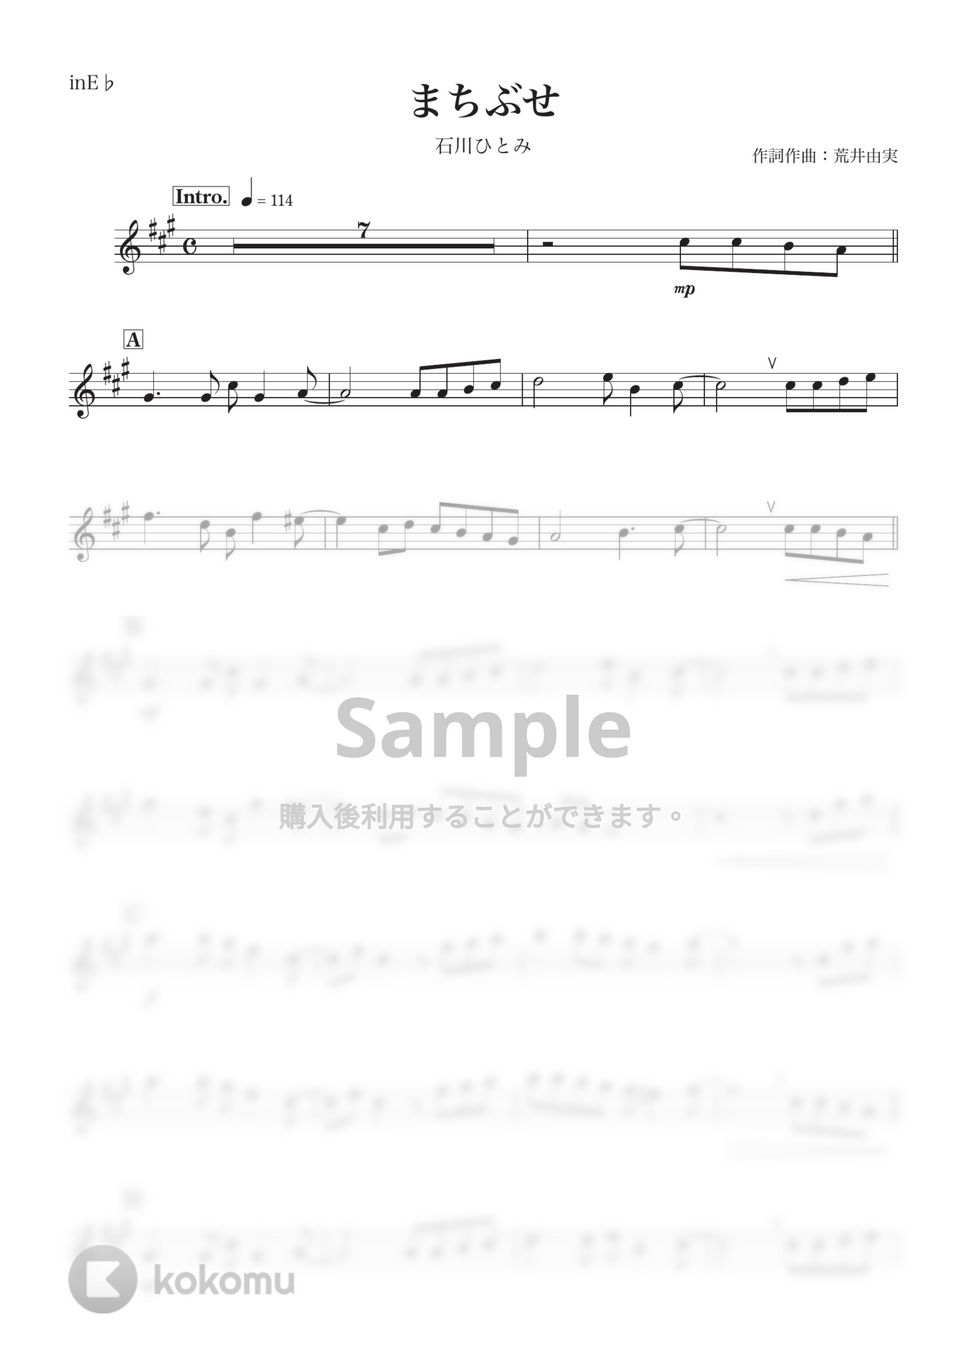 石川ひとみ - まちぶせ (E♭) by kanamusic